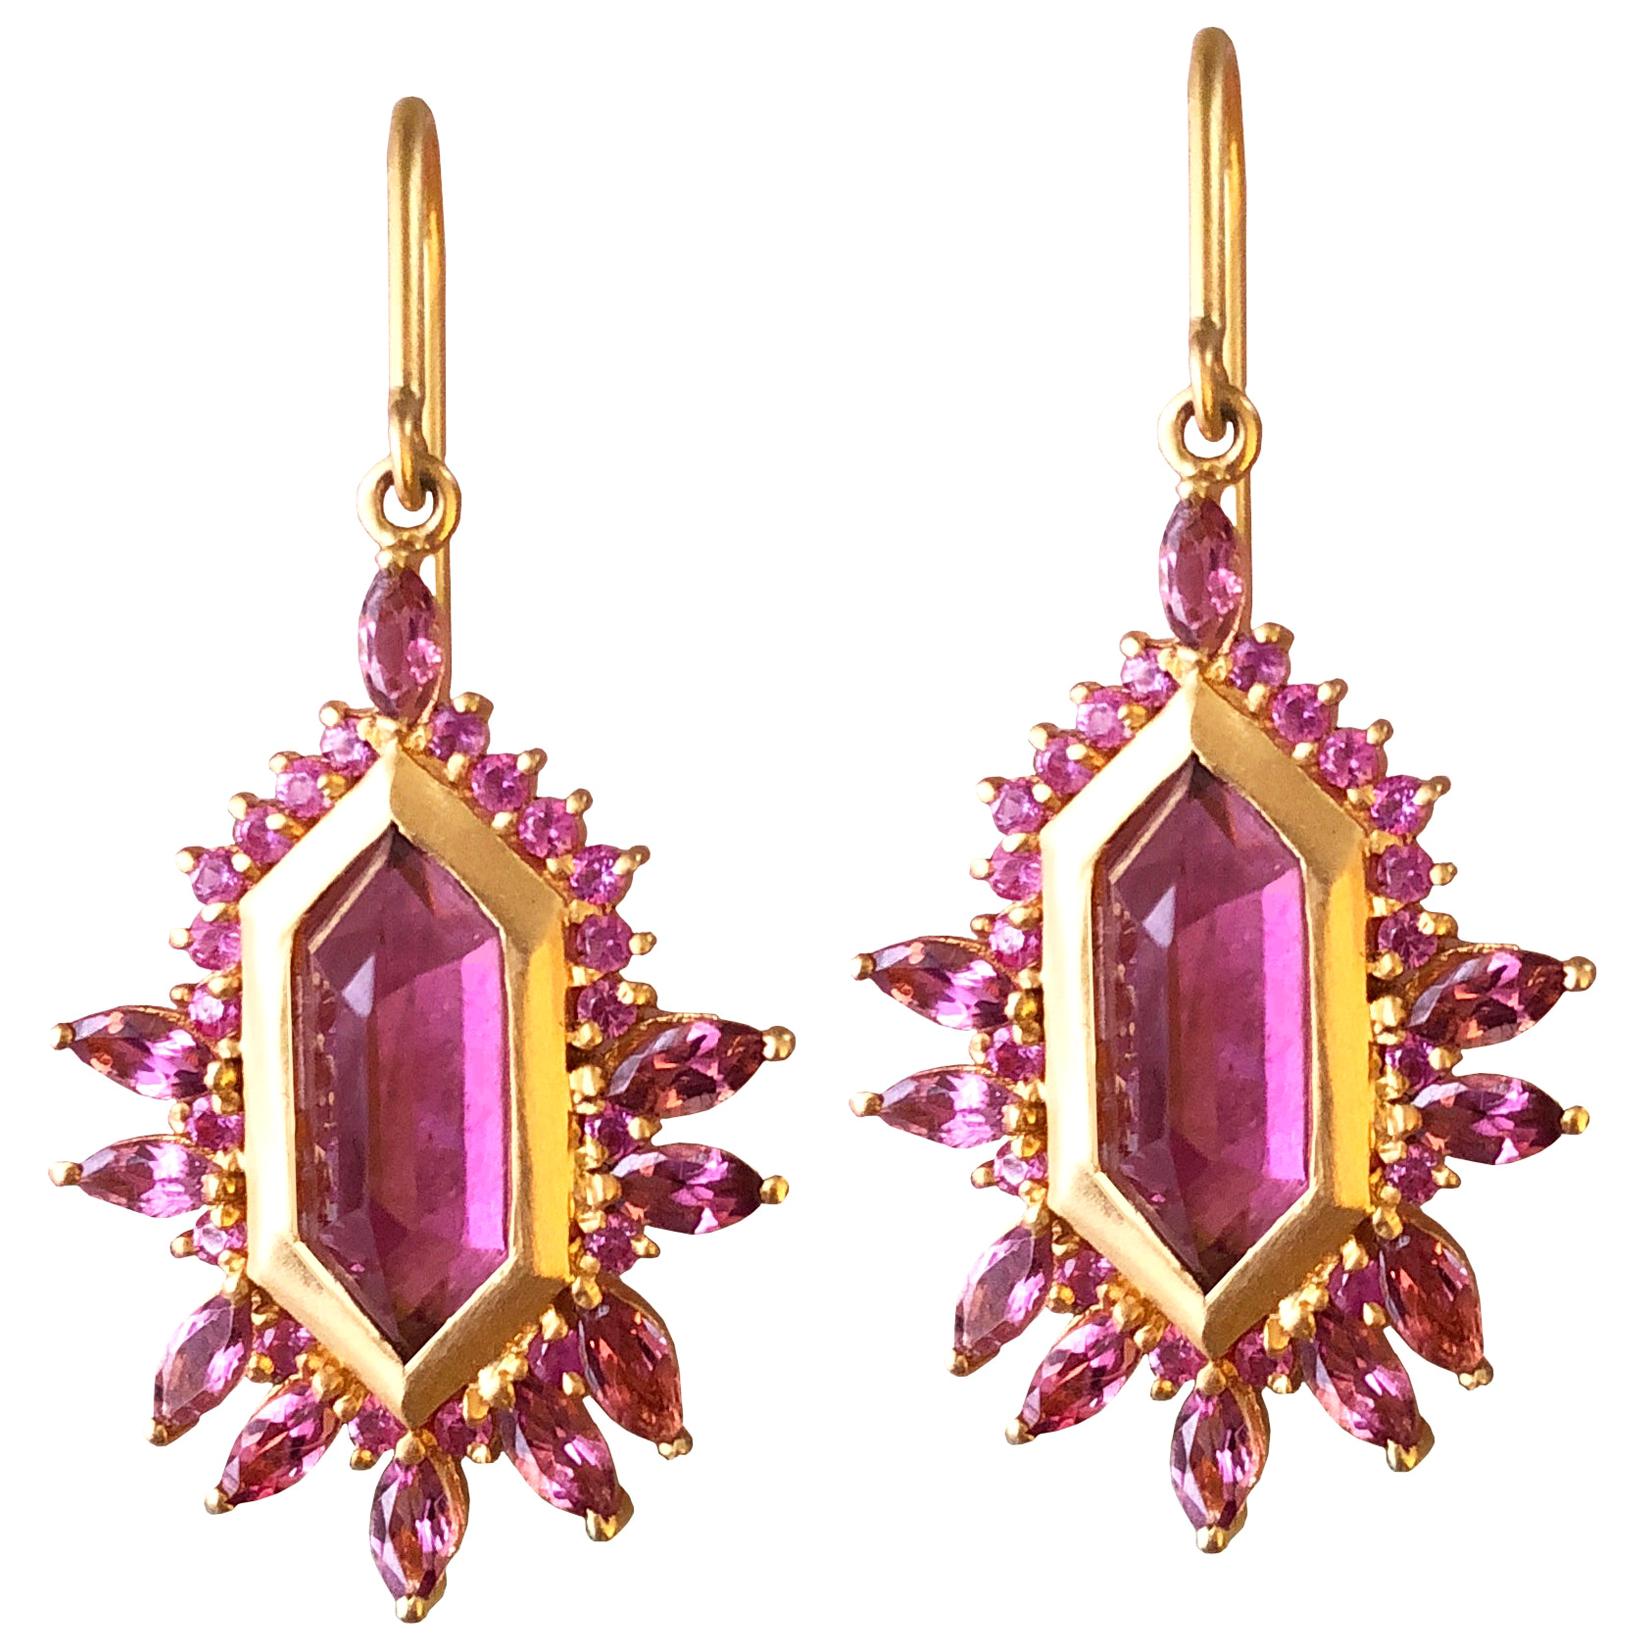 5.63 Carat Pink Tourmaline Gold Geometric Earrings by Lauren Harper